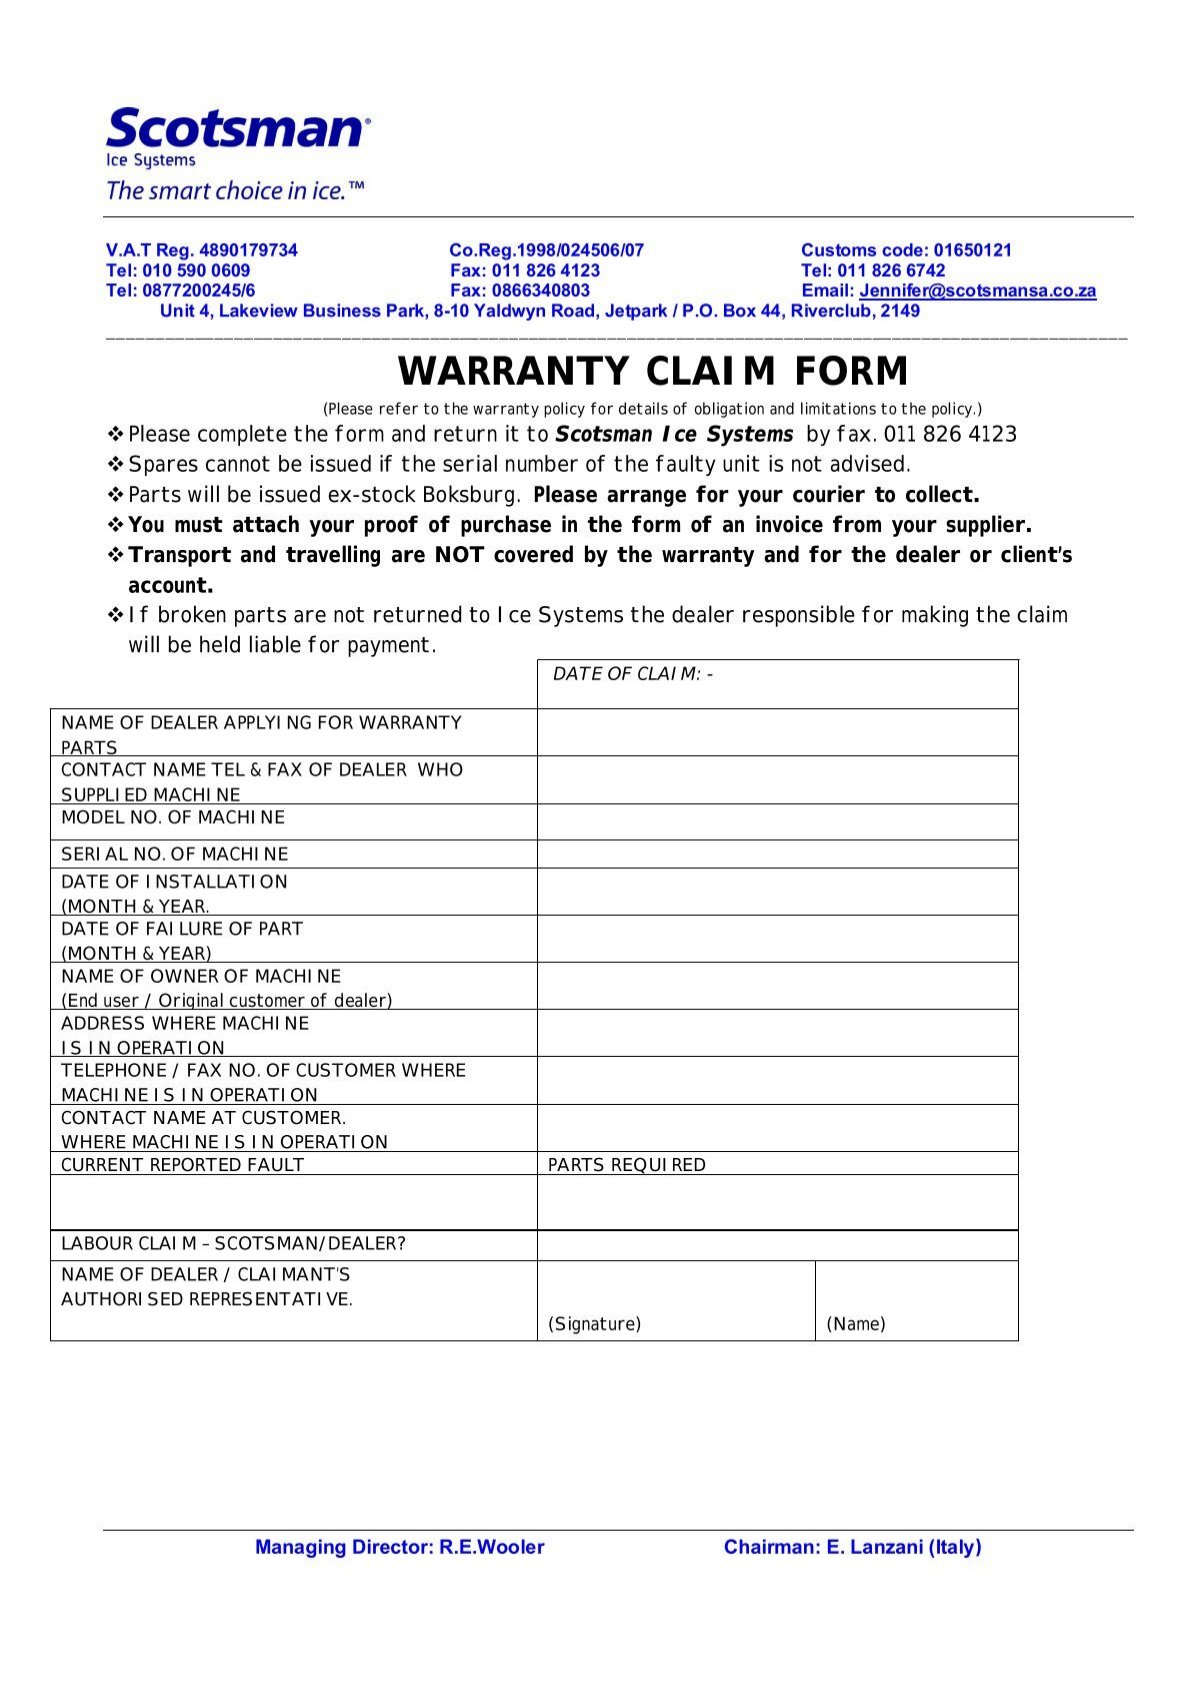 warranty-claim-form-scotsman-ice-systems